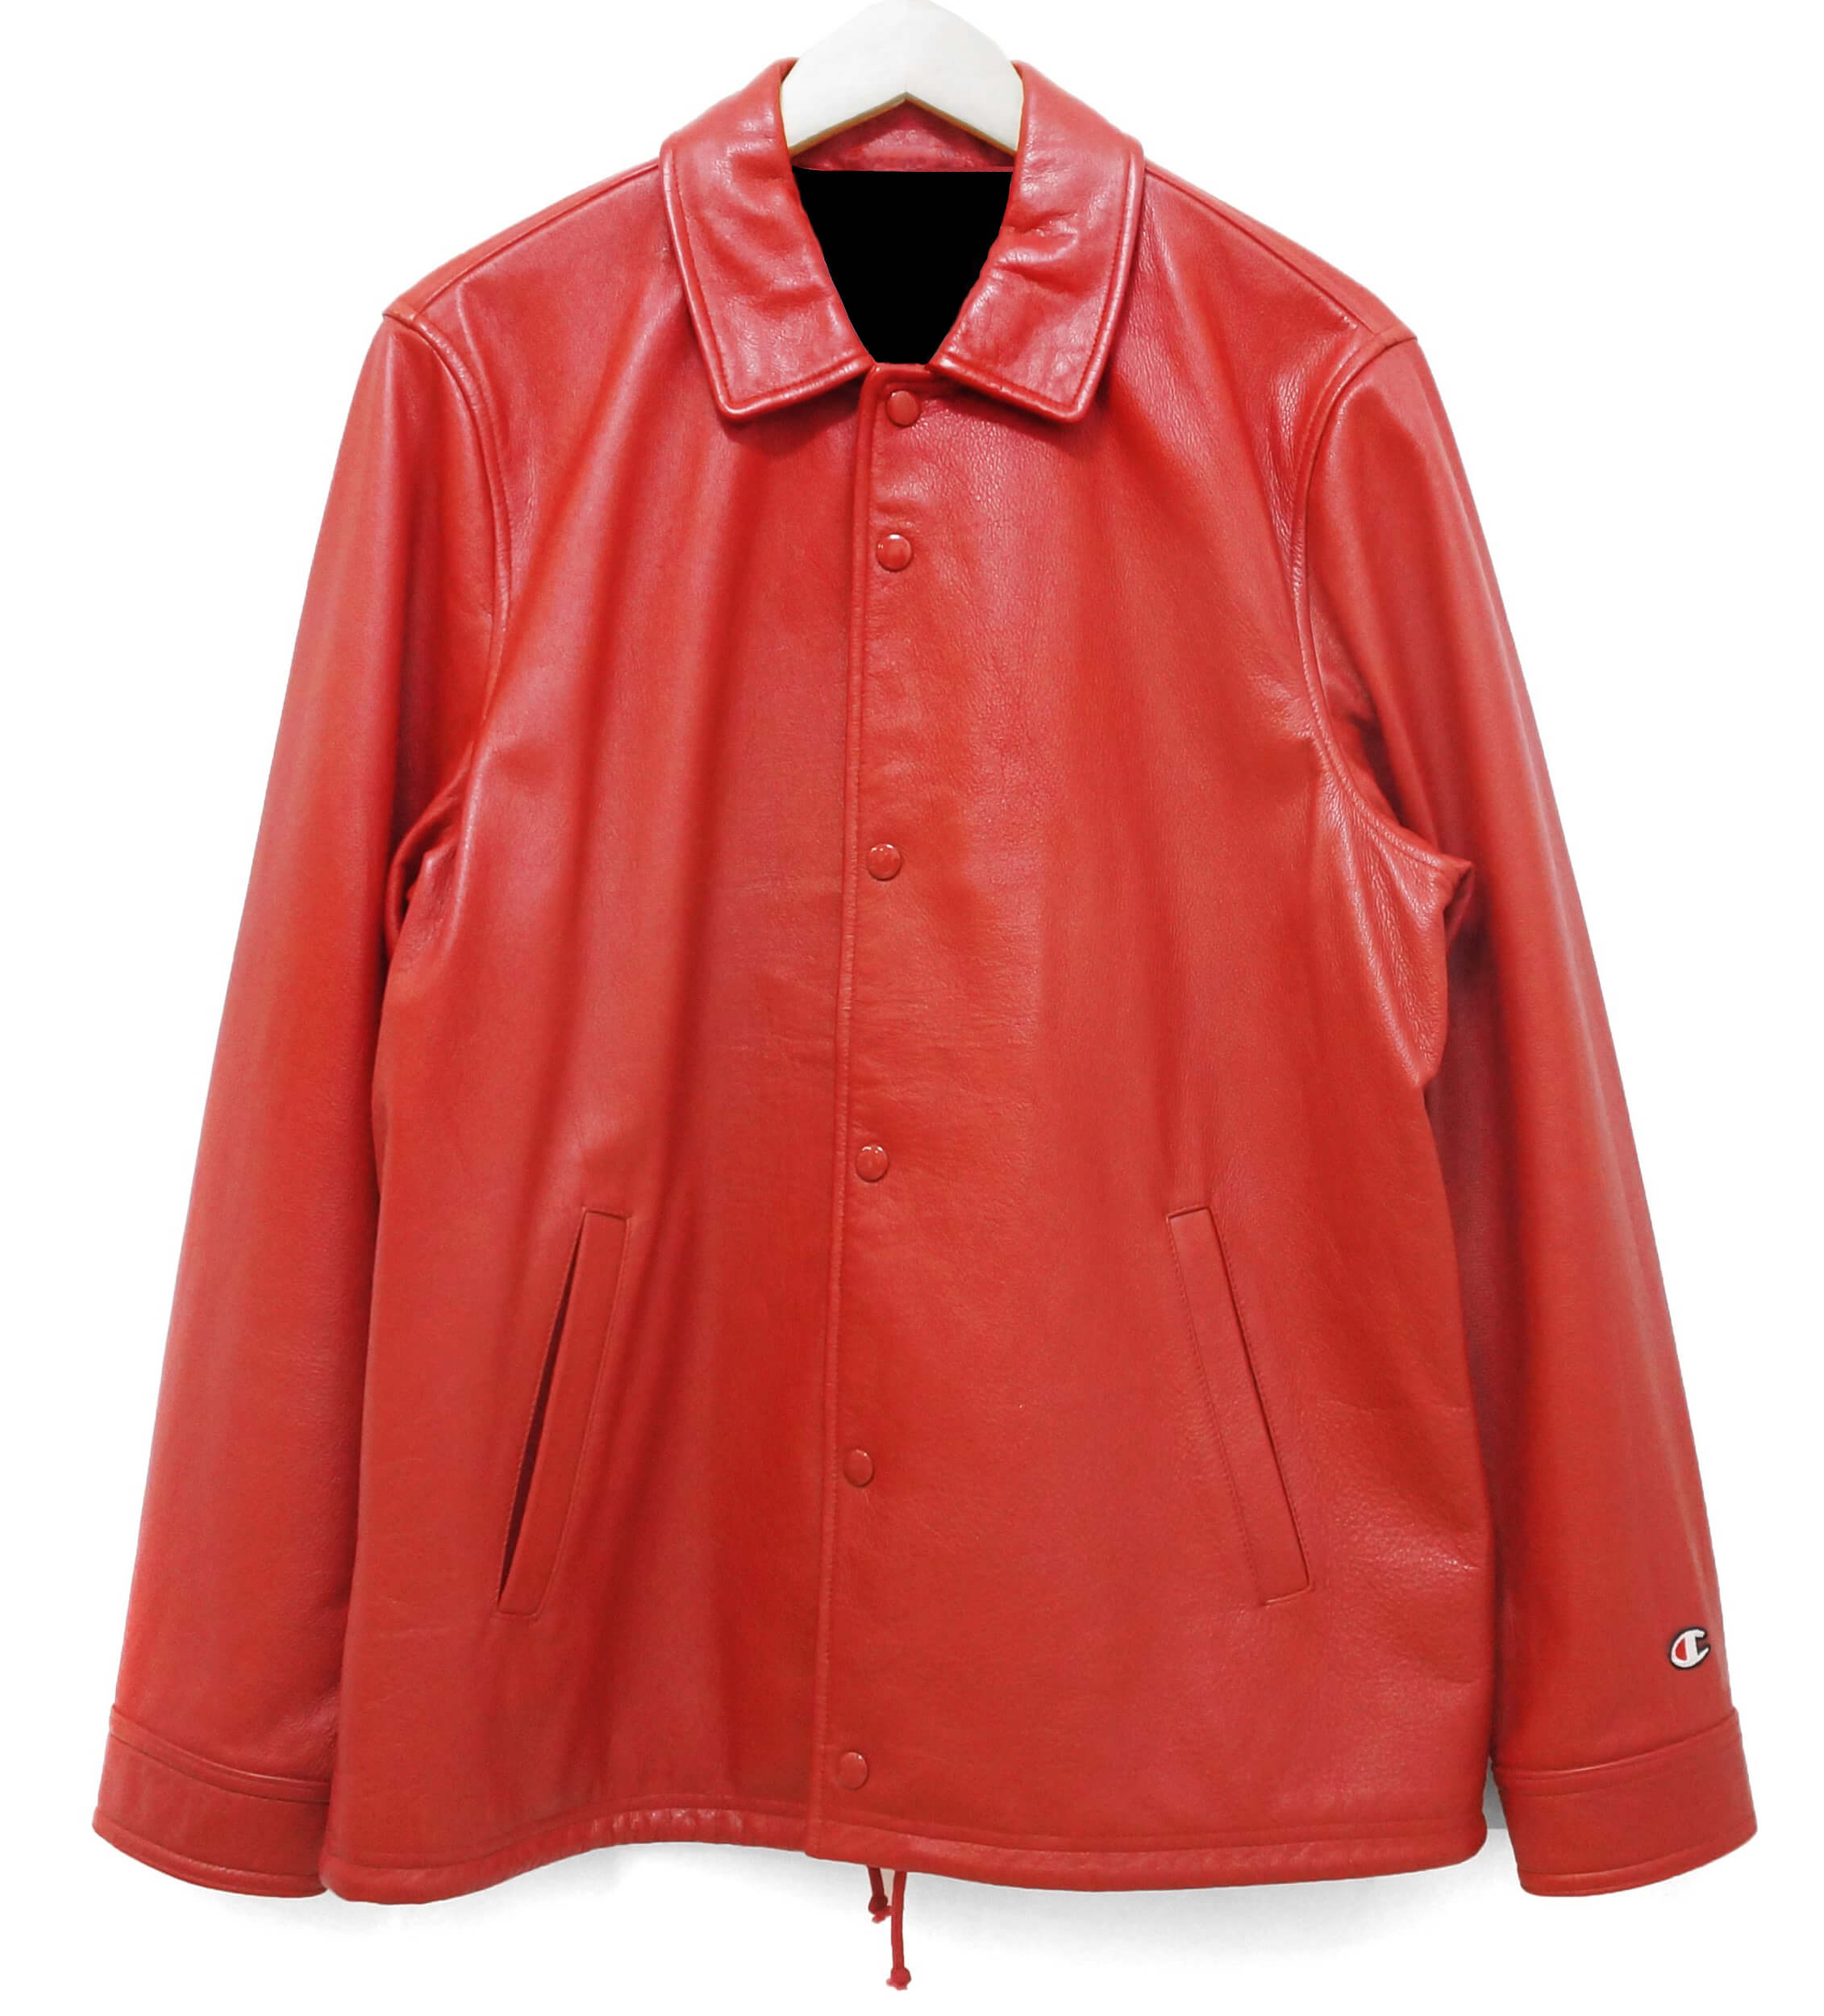 Supreme Champion Red Leather Jacket - Maker of Jacket